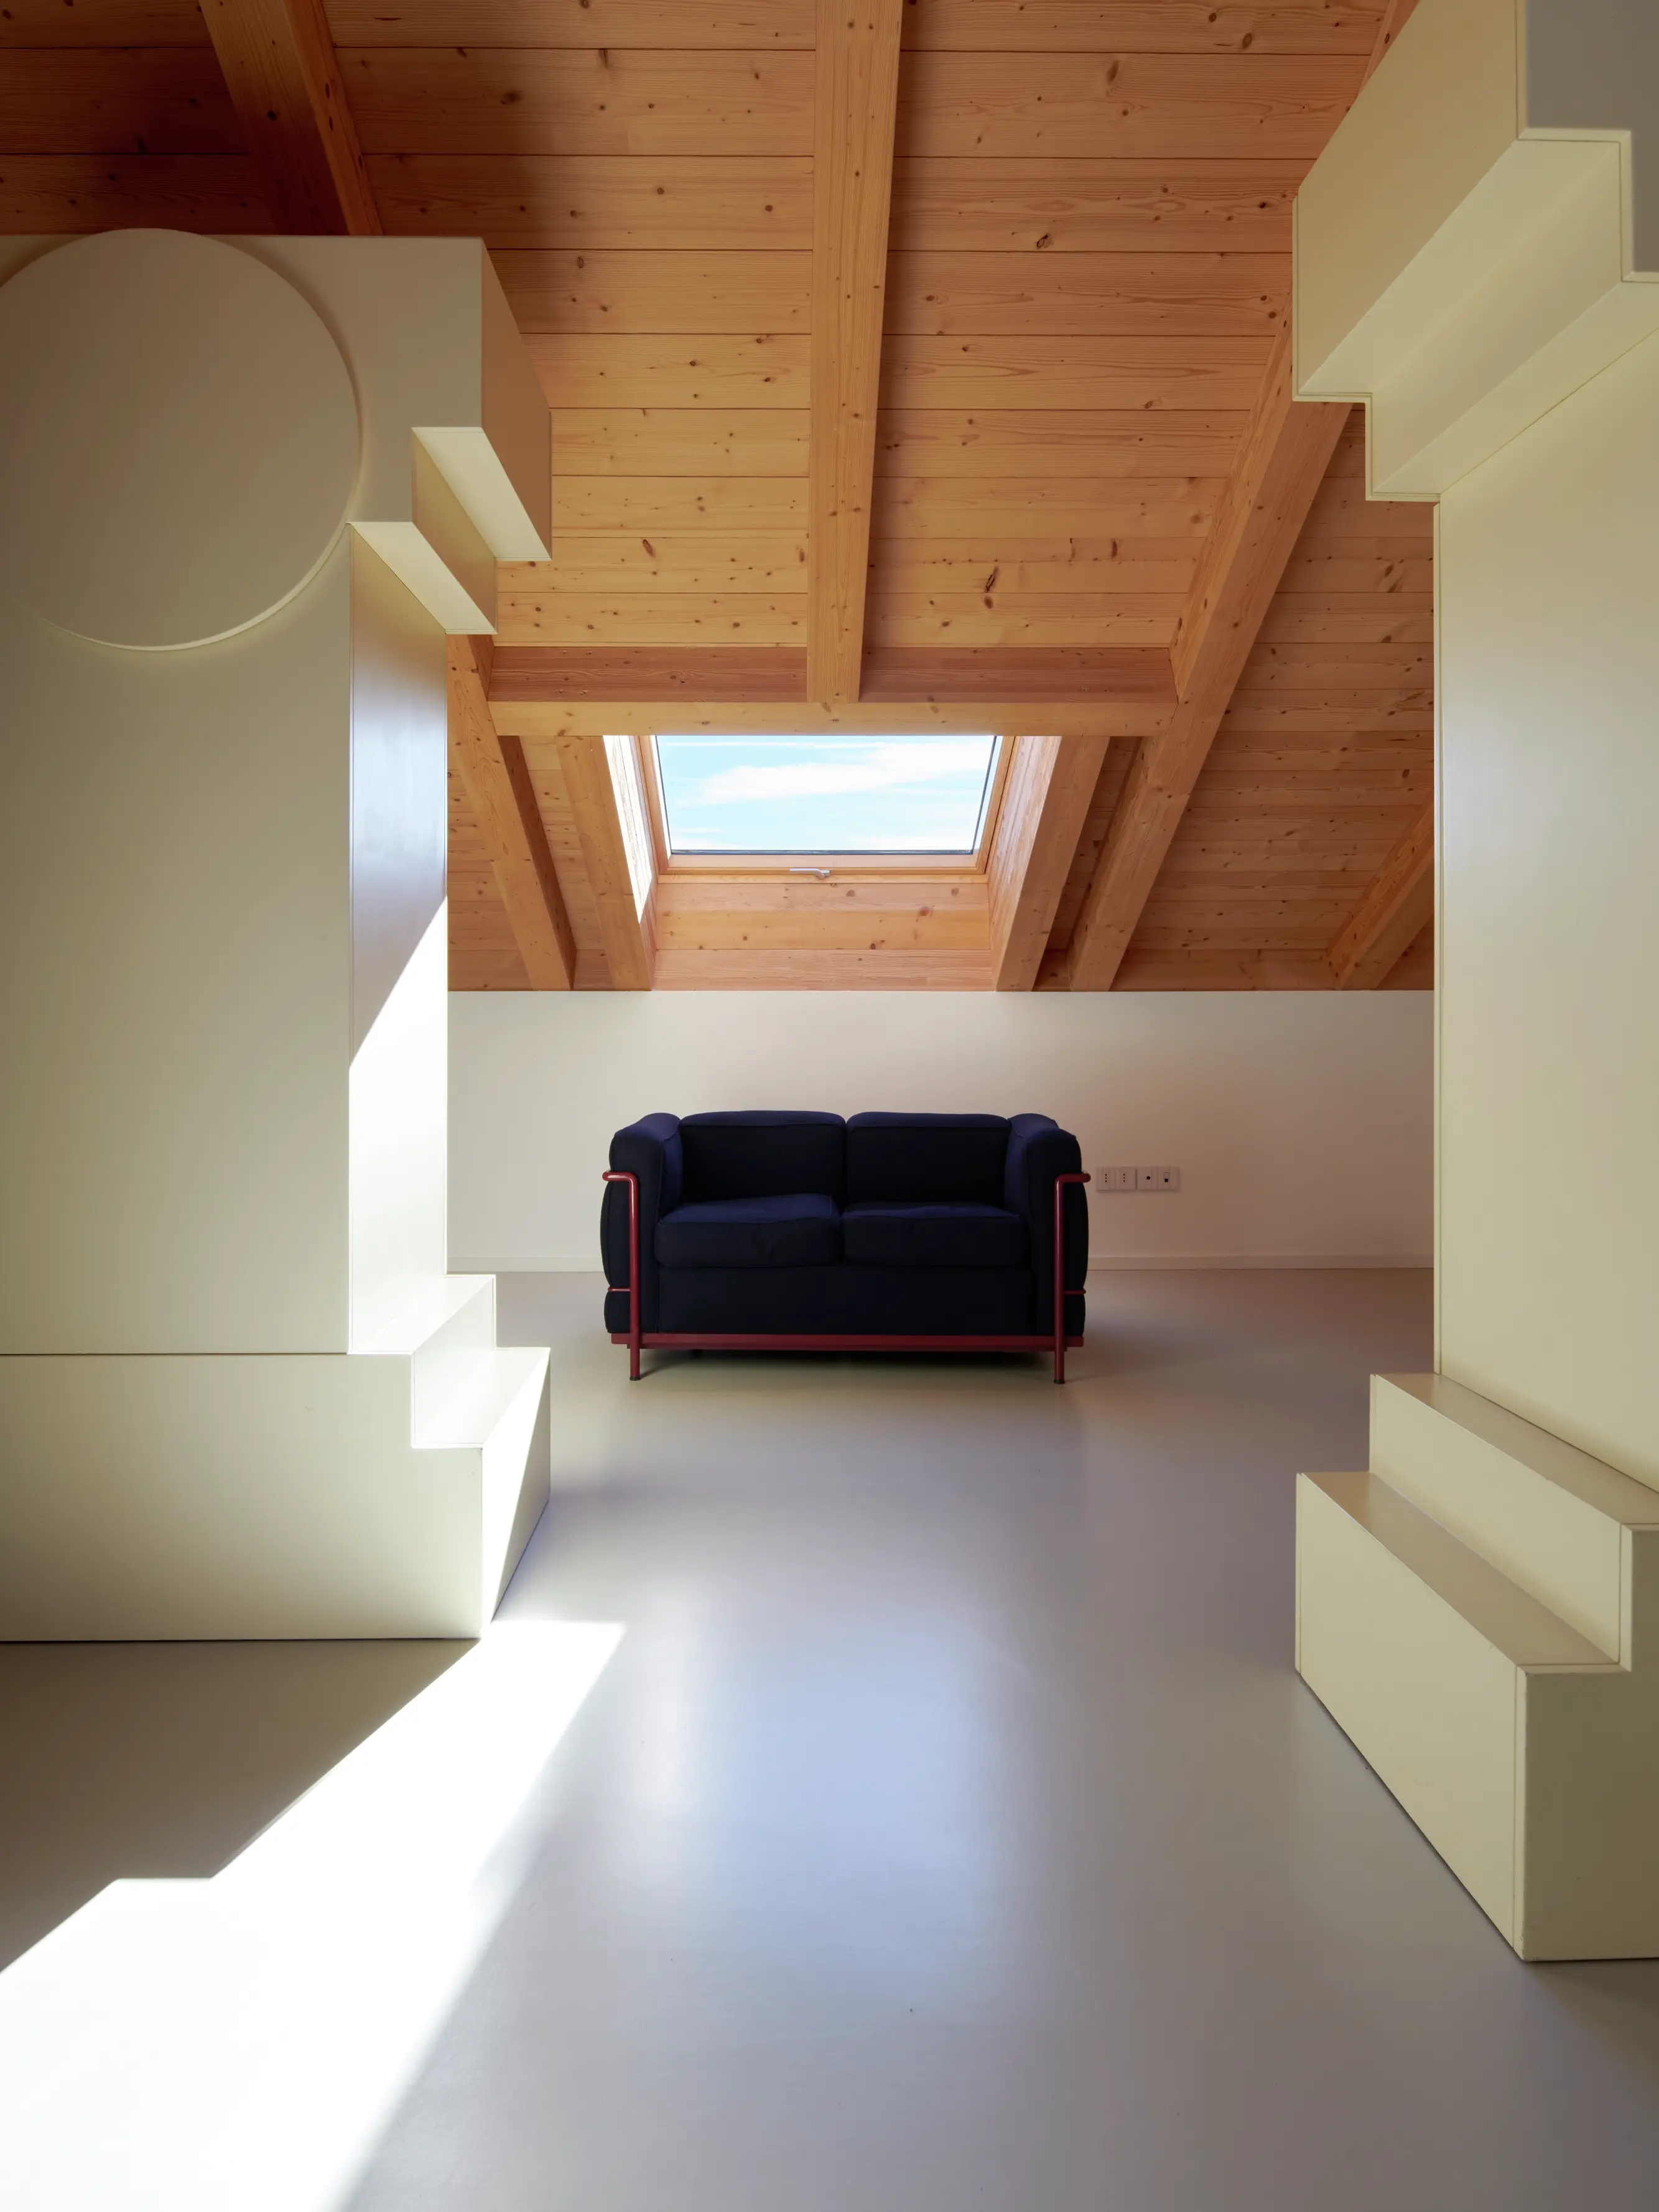 Une pièce lumineuse et aérée avec un plafond en bois, des murs blancs et un canapé noir, éclairée par une fenêtre de toit Velux.